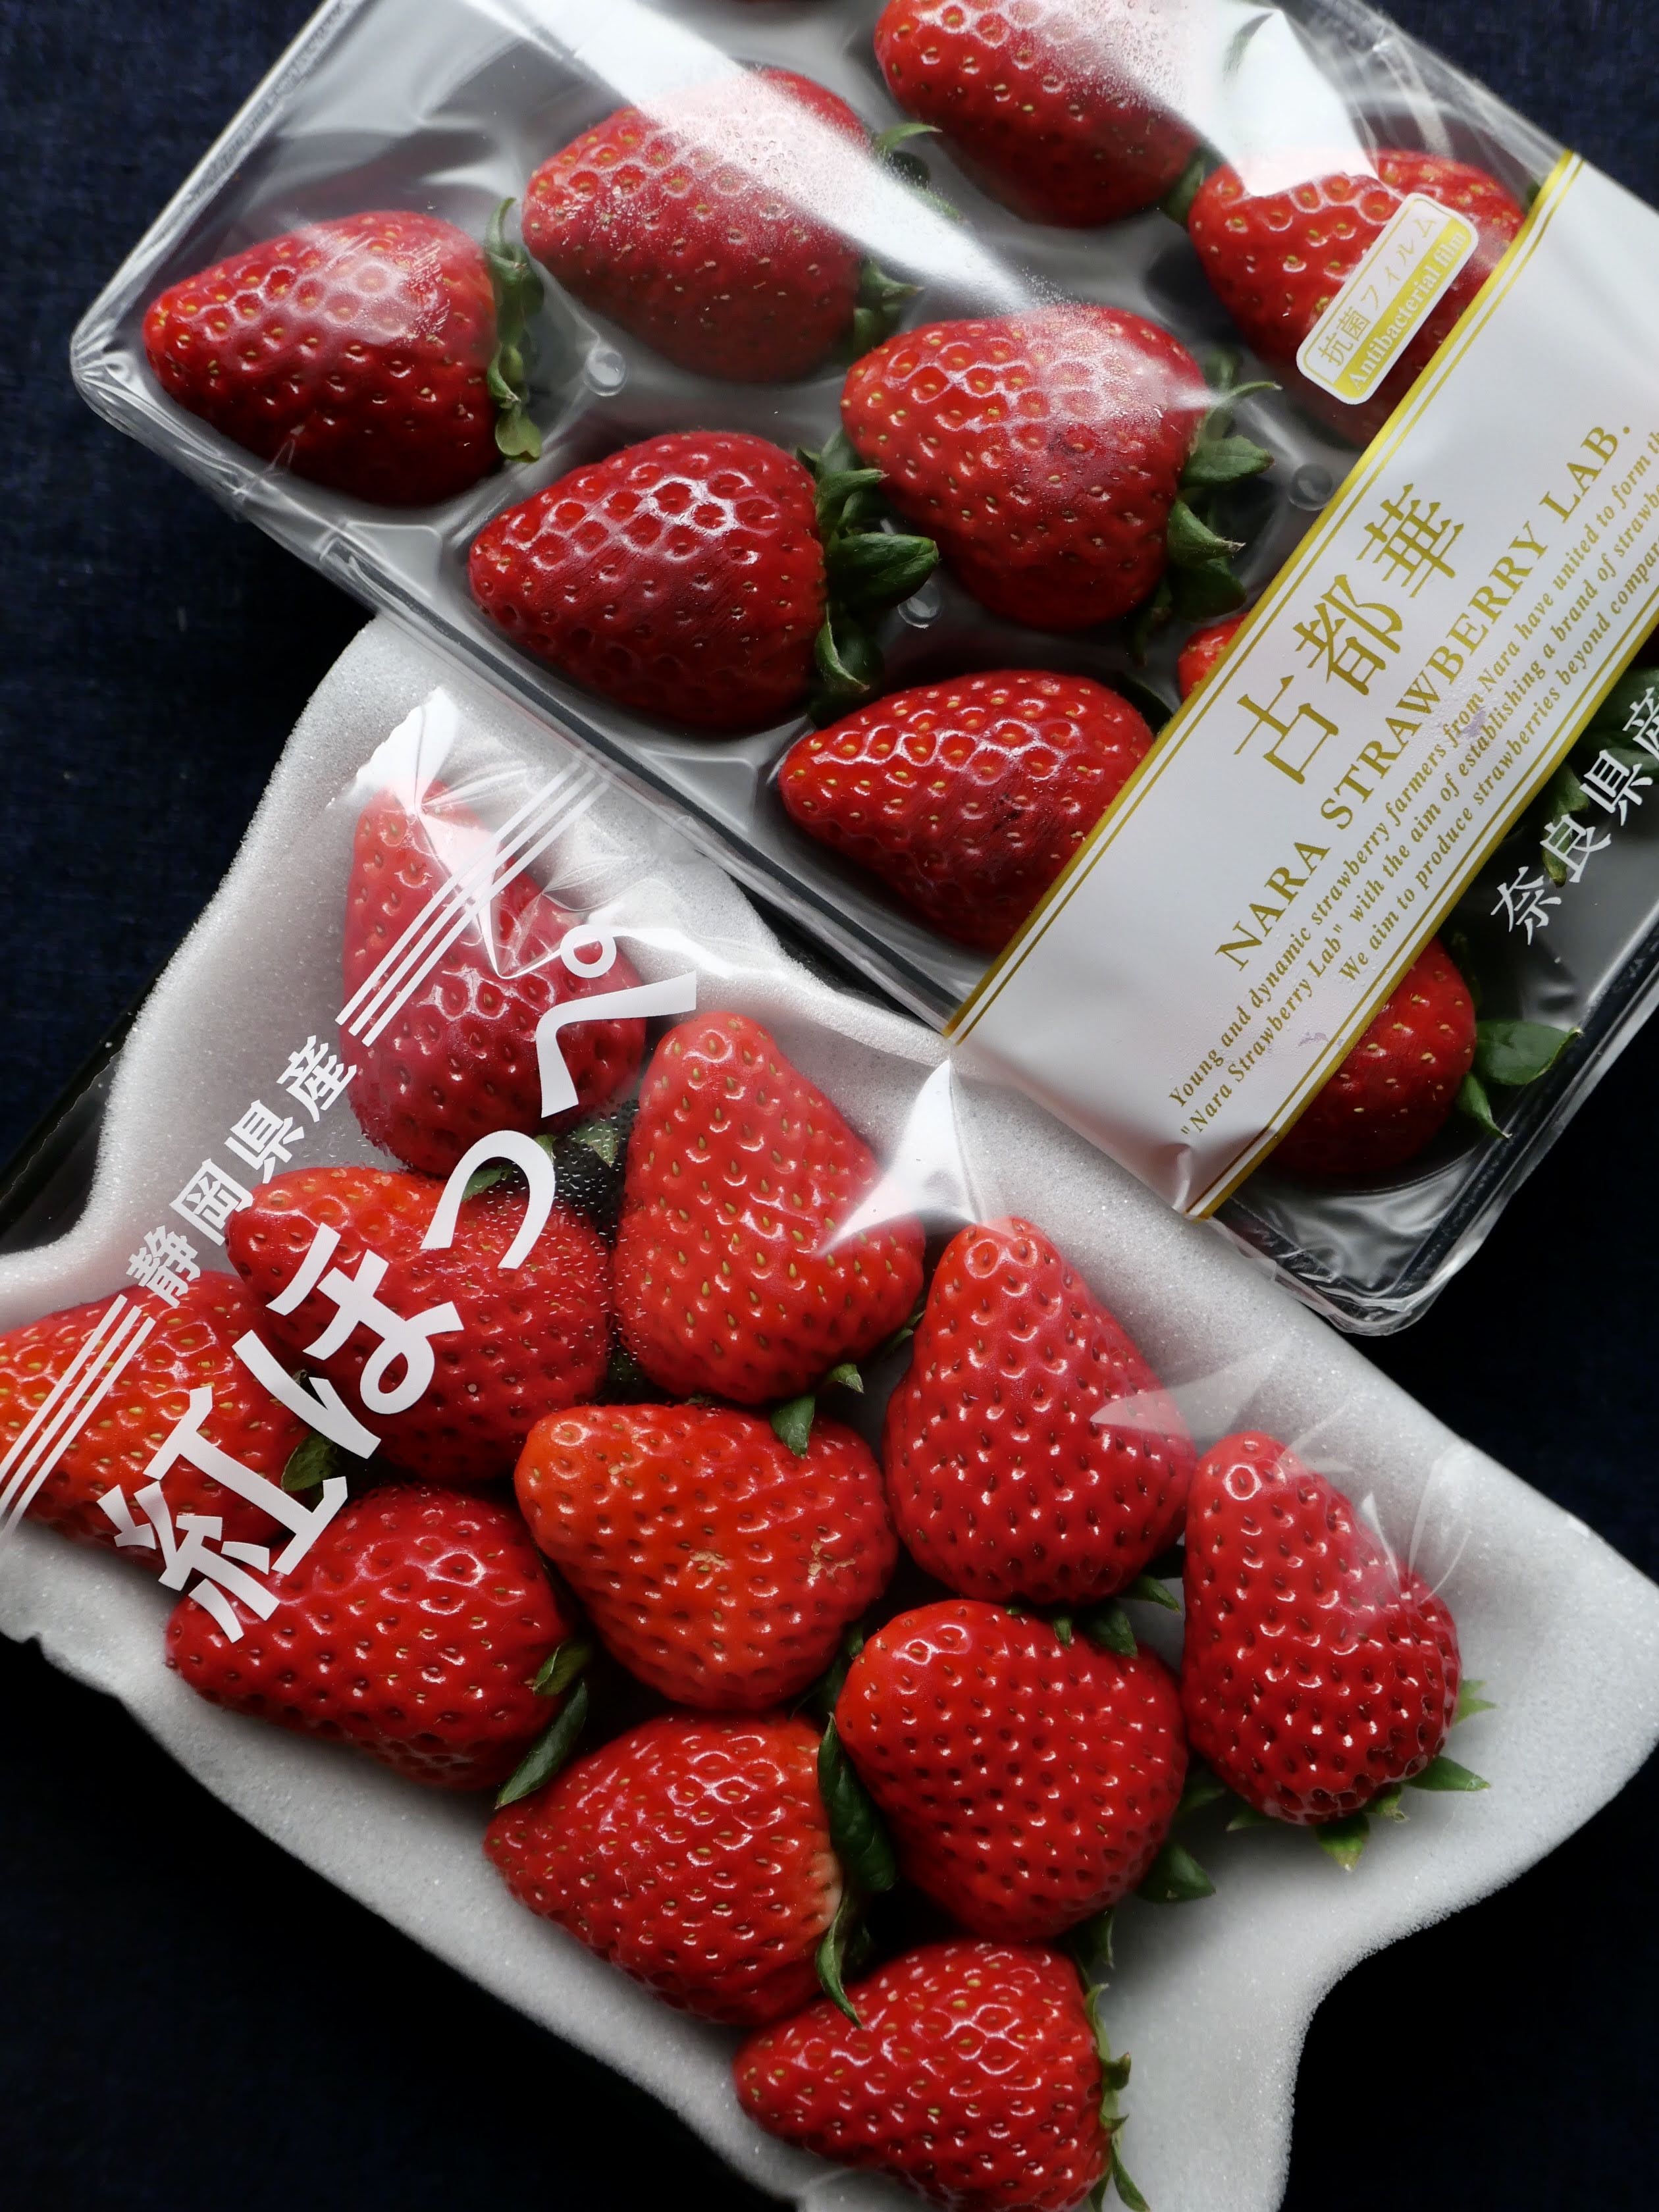 左下那盒是靜岡紅顏，是我心中僅次於古都華的草莓，現在雖然到季尾了，但還是柔軟多汁，非常甜美。